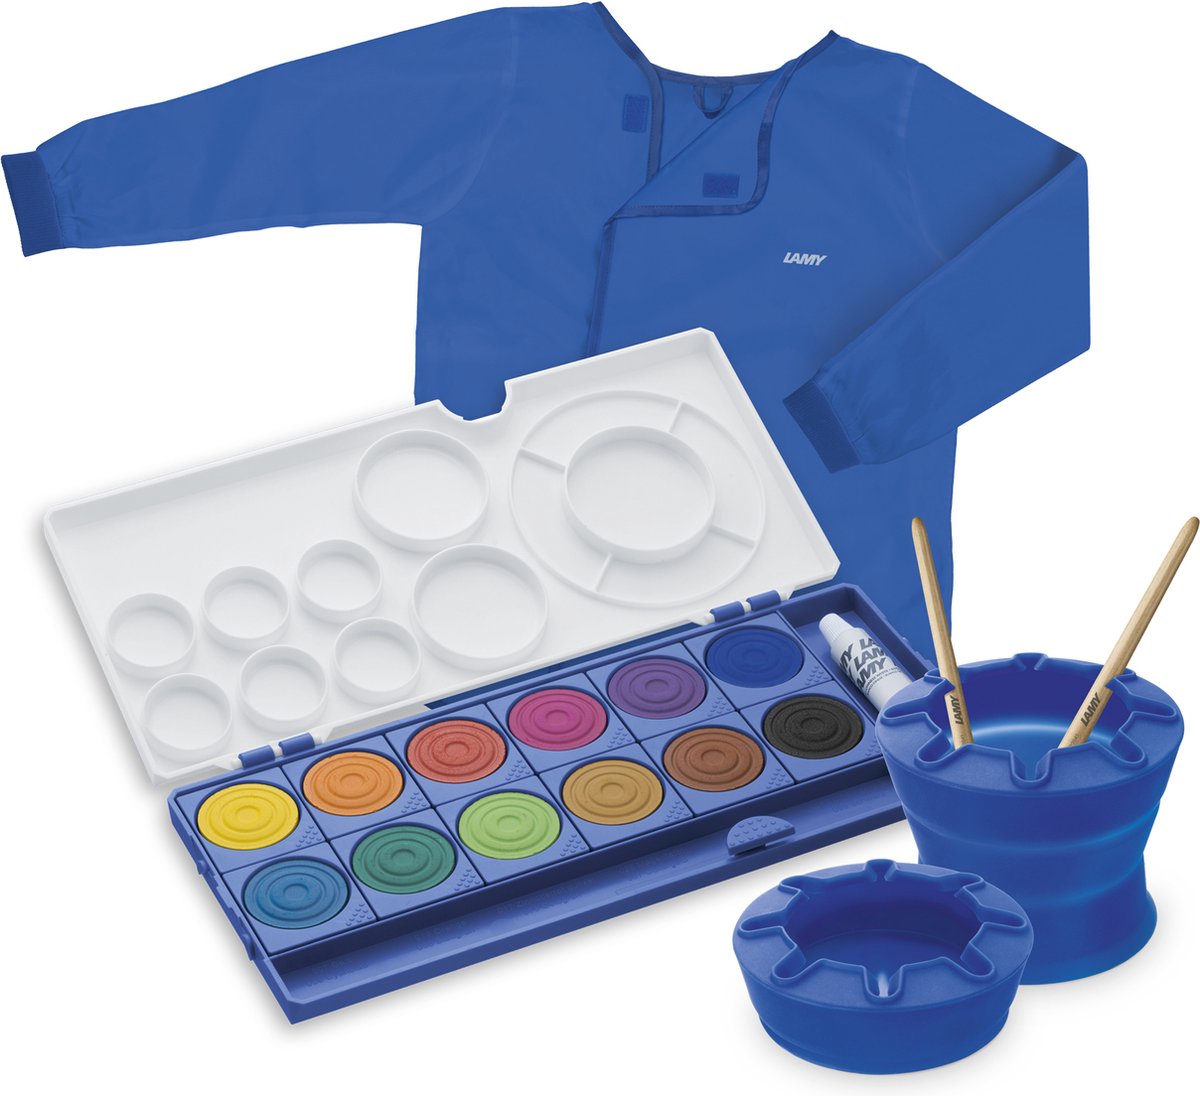 Lamy - Aquaplus - Aquarelverf set blauw - 12 verschillende kleuren verf - 2 Penselen - 1 Verfschort - 1 Penselenhouder - Verfset voor Kinderen